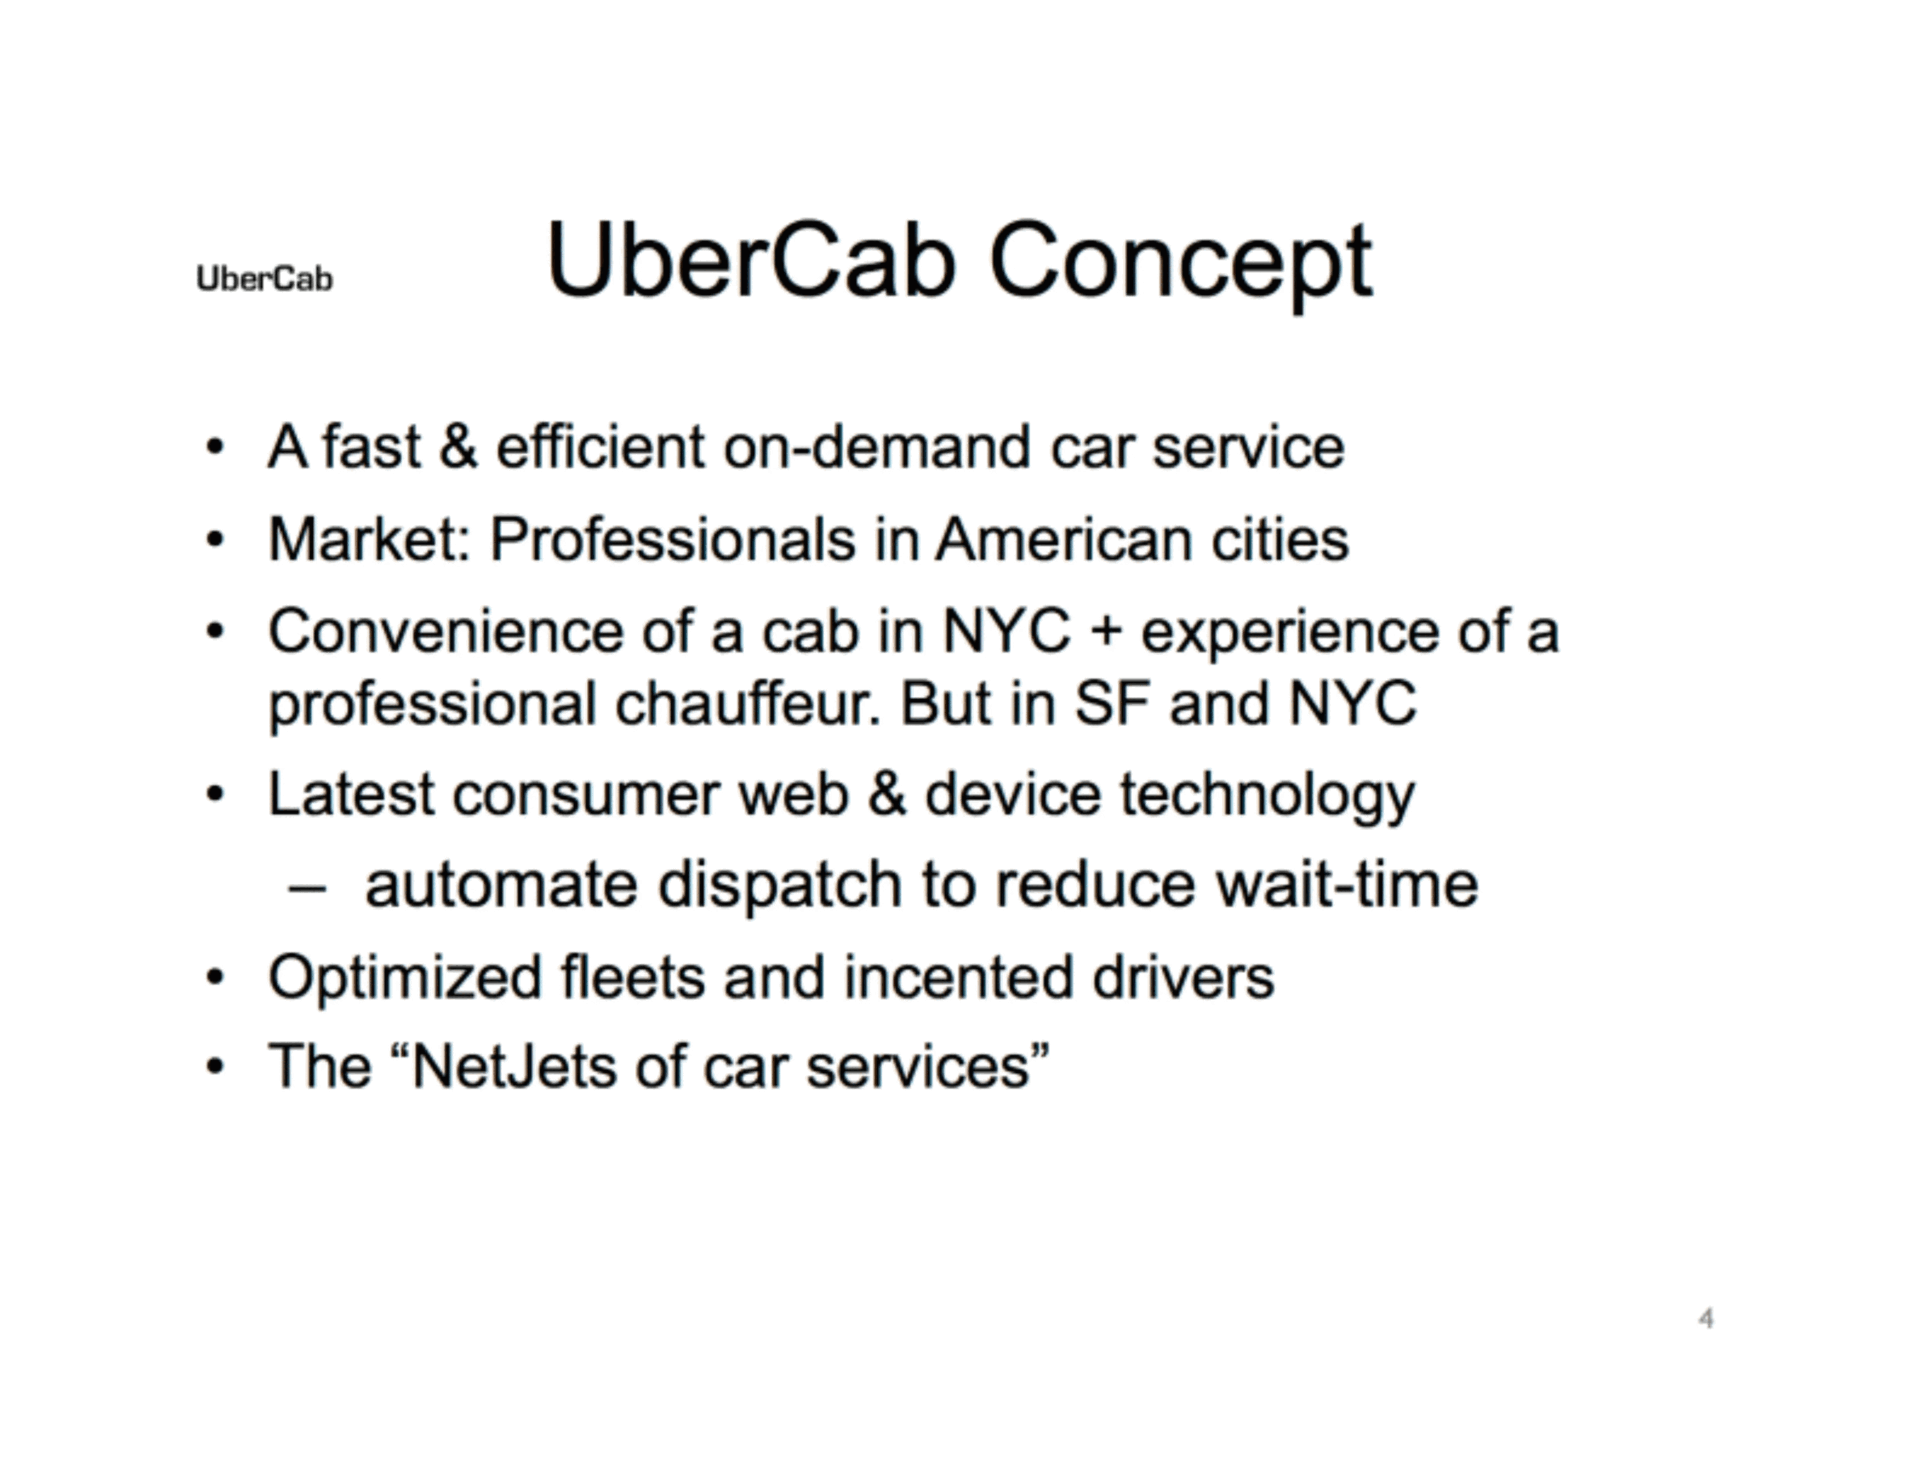 Original Uber pitch deck solution slide